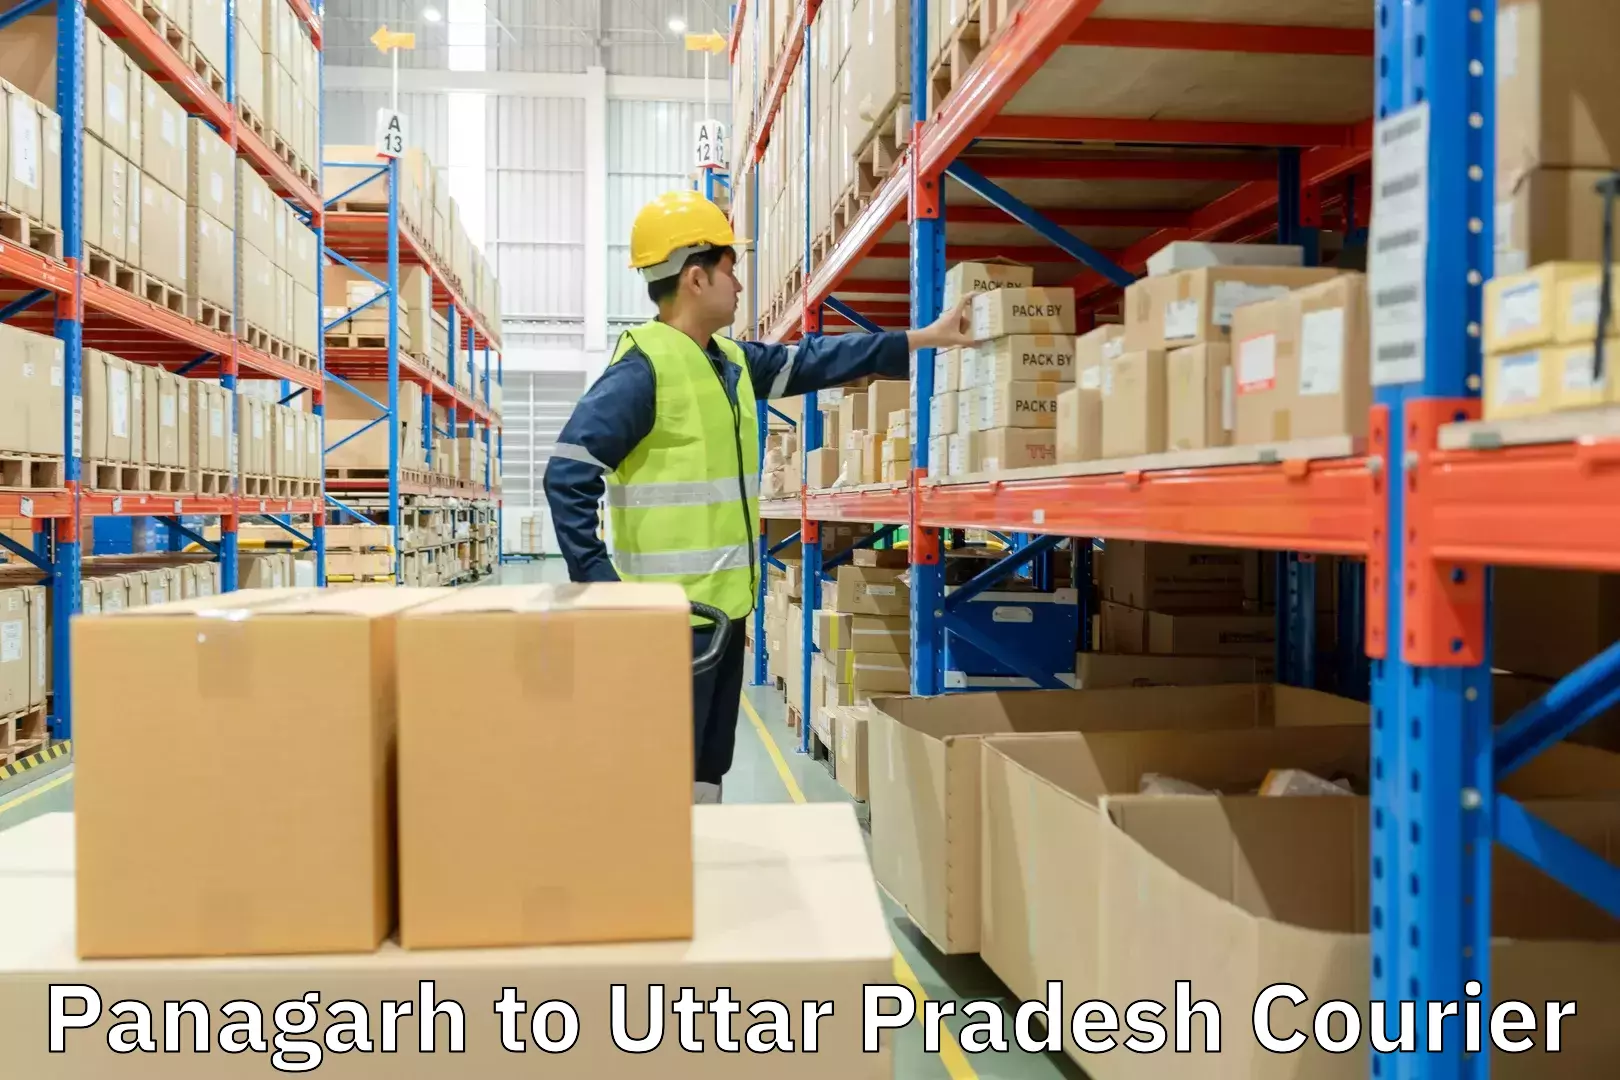 Regular parcel service Panagarh to Uttar Pradesh